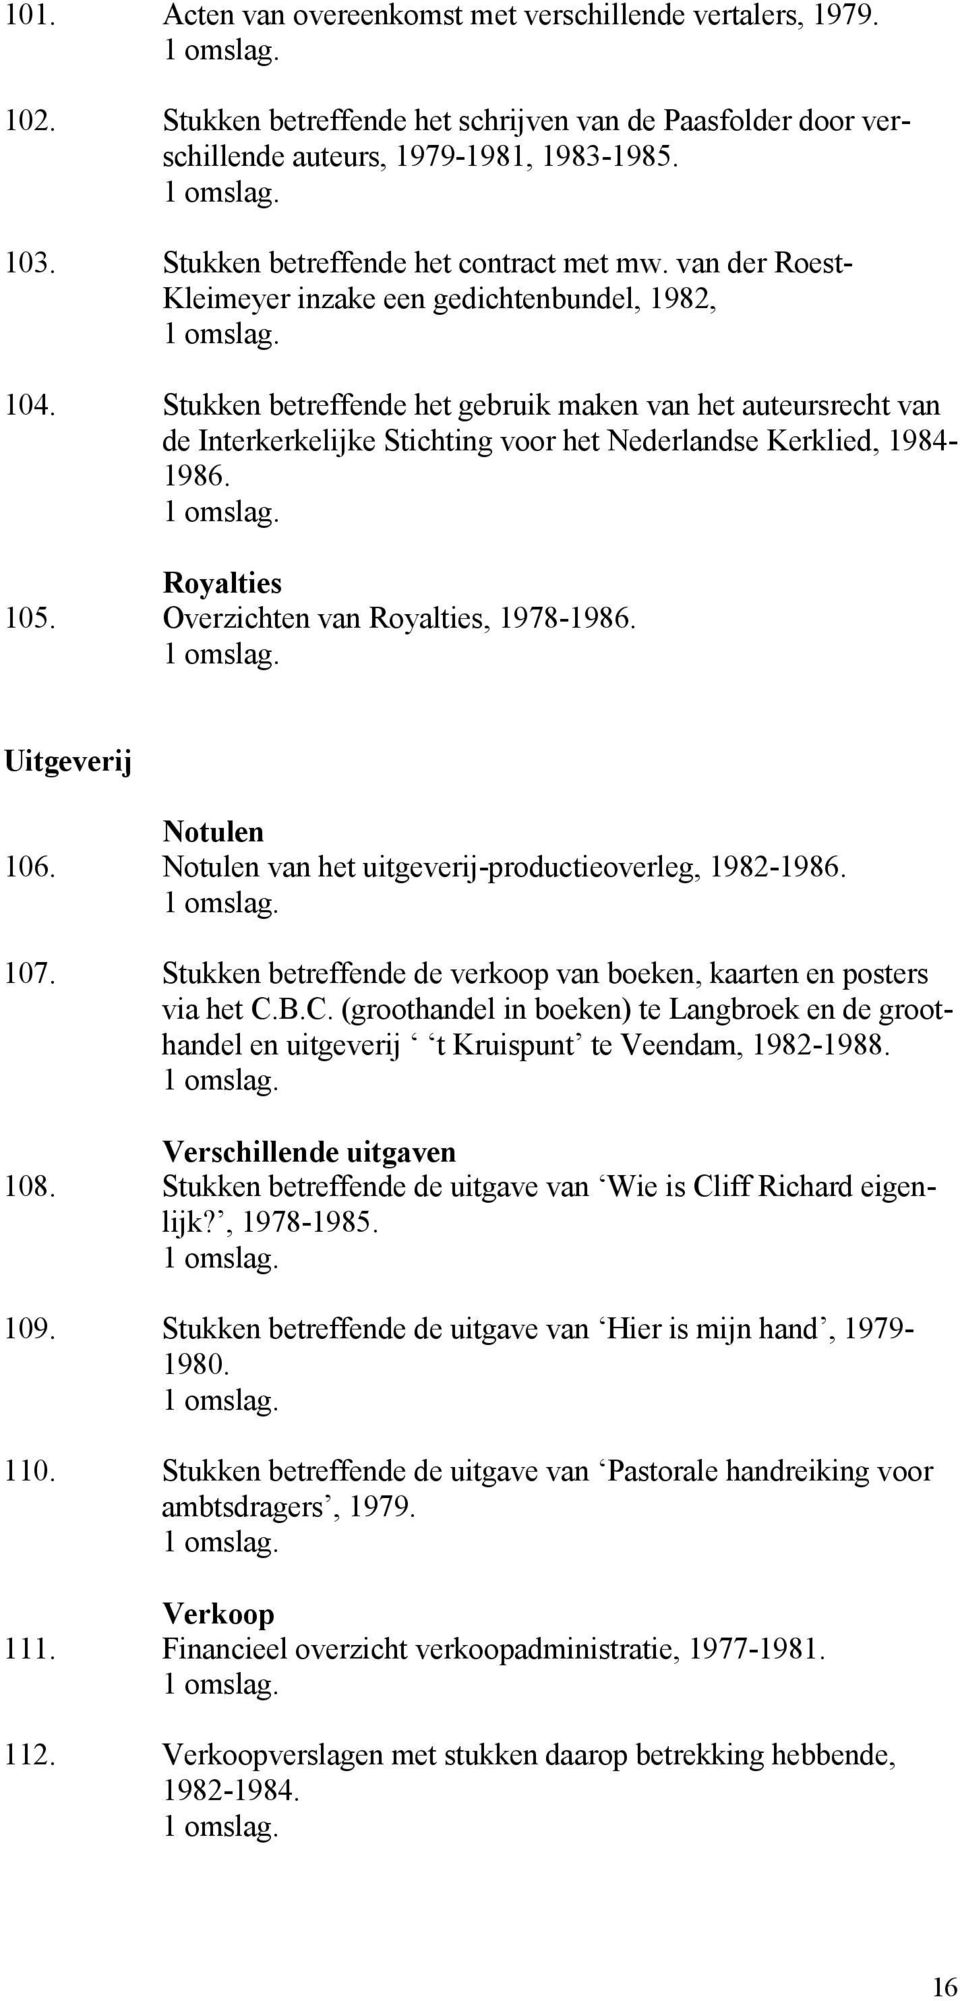 Stukken betreffende het gebruik maken van het auteursrecht van de Interkerkelijke Stichting voor het Nederlandse Kerklied, 1984-1986. Royalties 105. Overzichten van Royalties, 1978-1986.